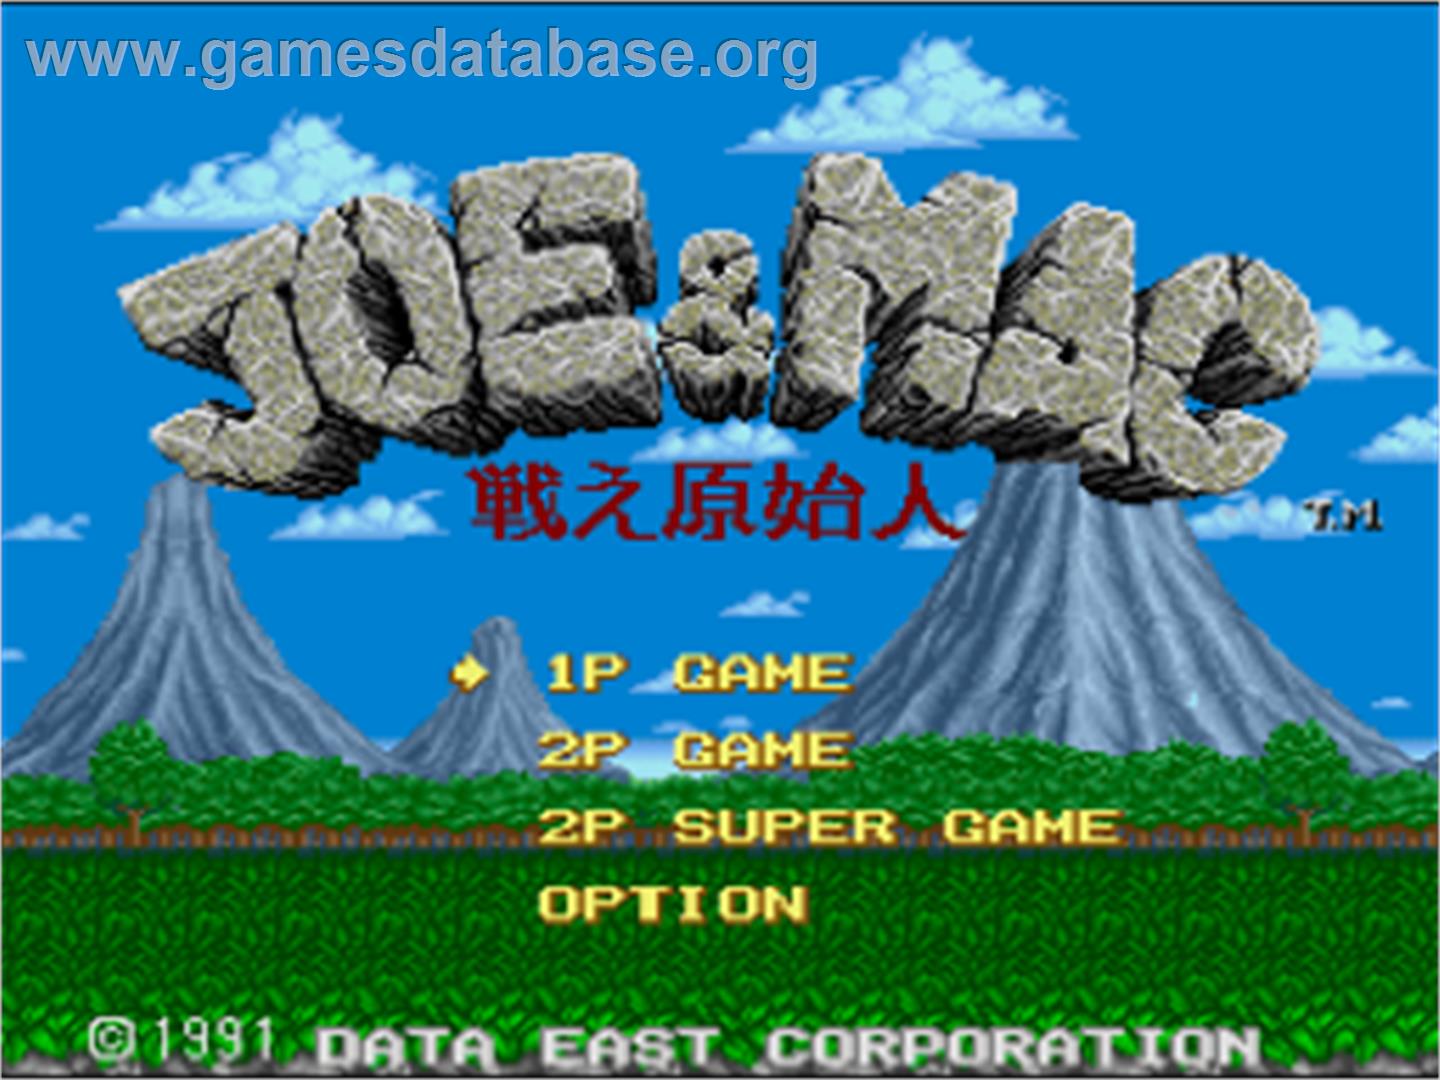 Joe & Mac: Caveman Ninja - Nintendo SNES - Artwork - Title Screen